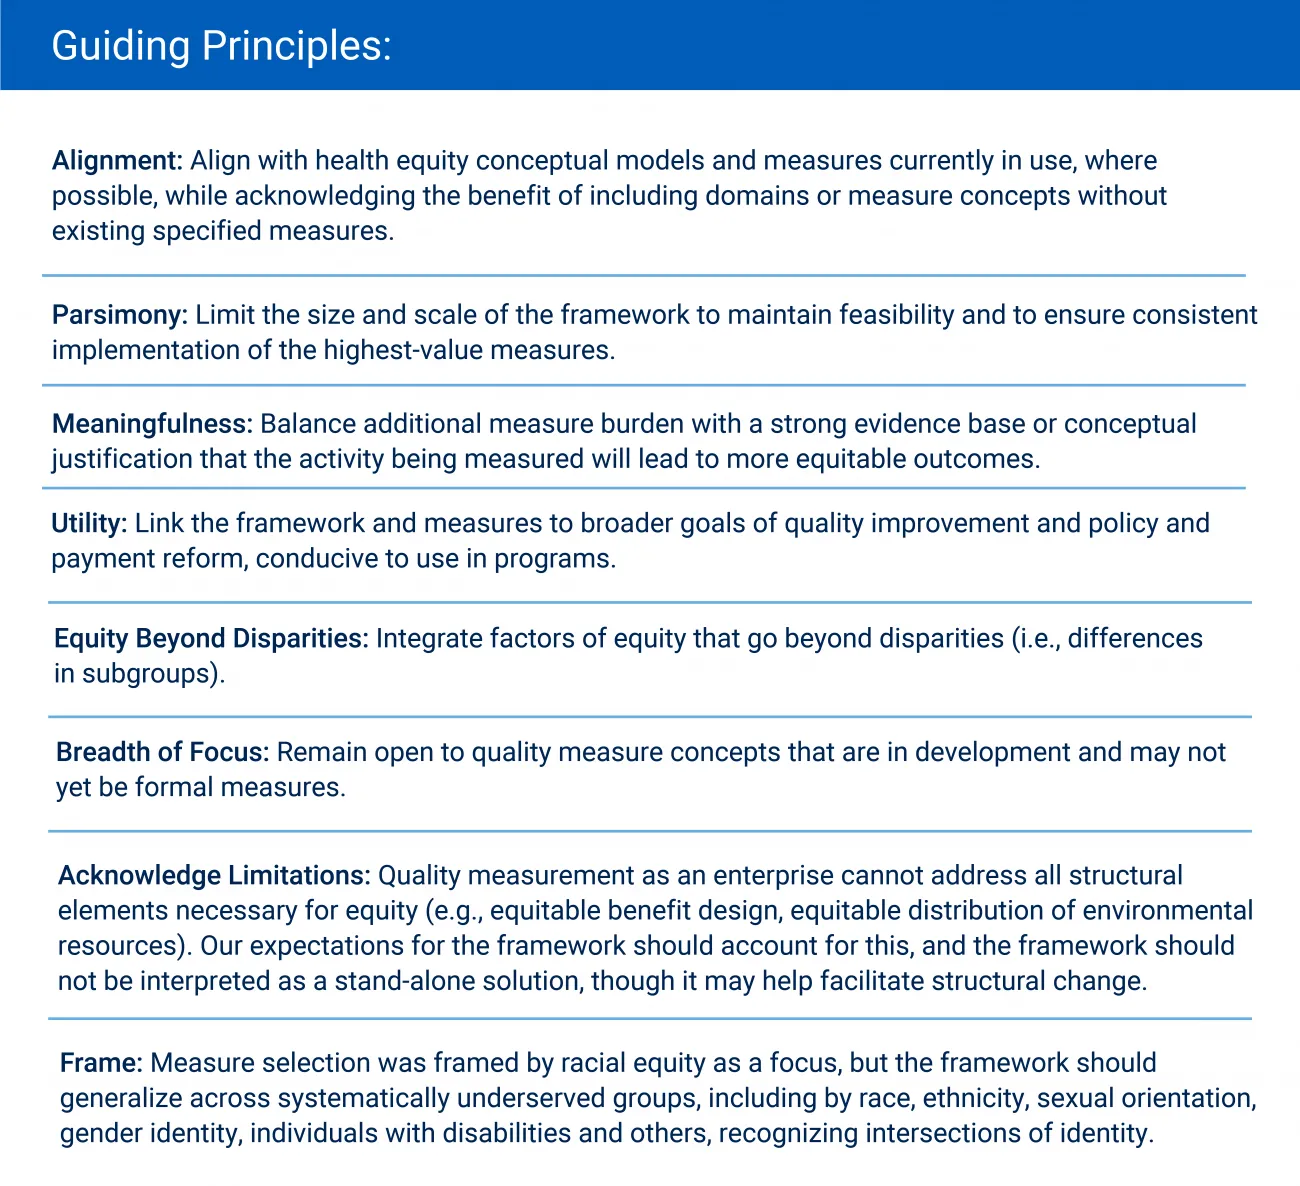 guiding-principles